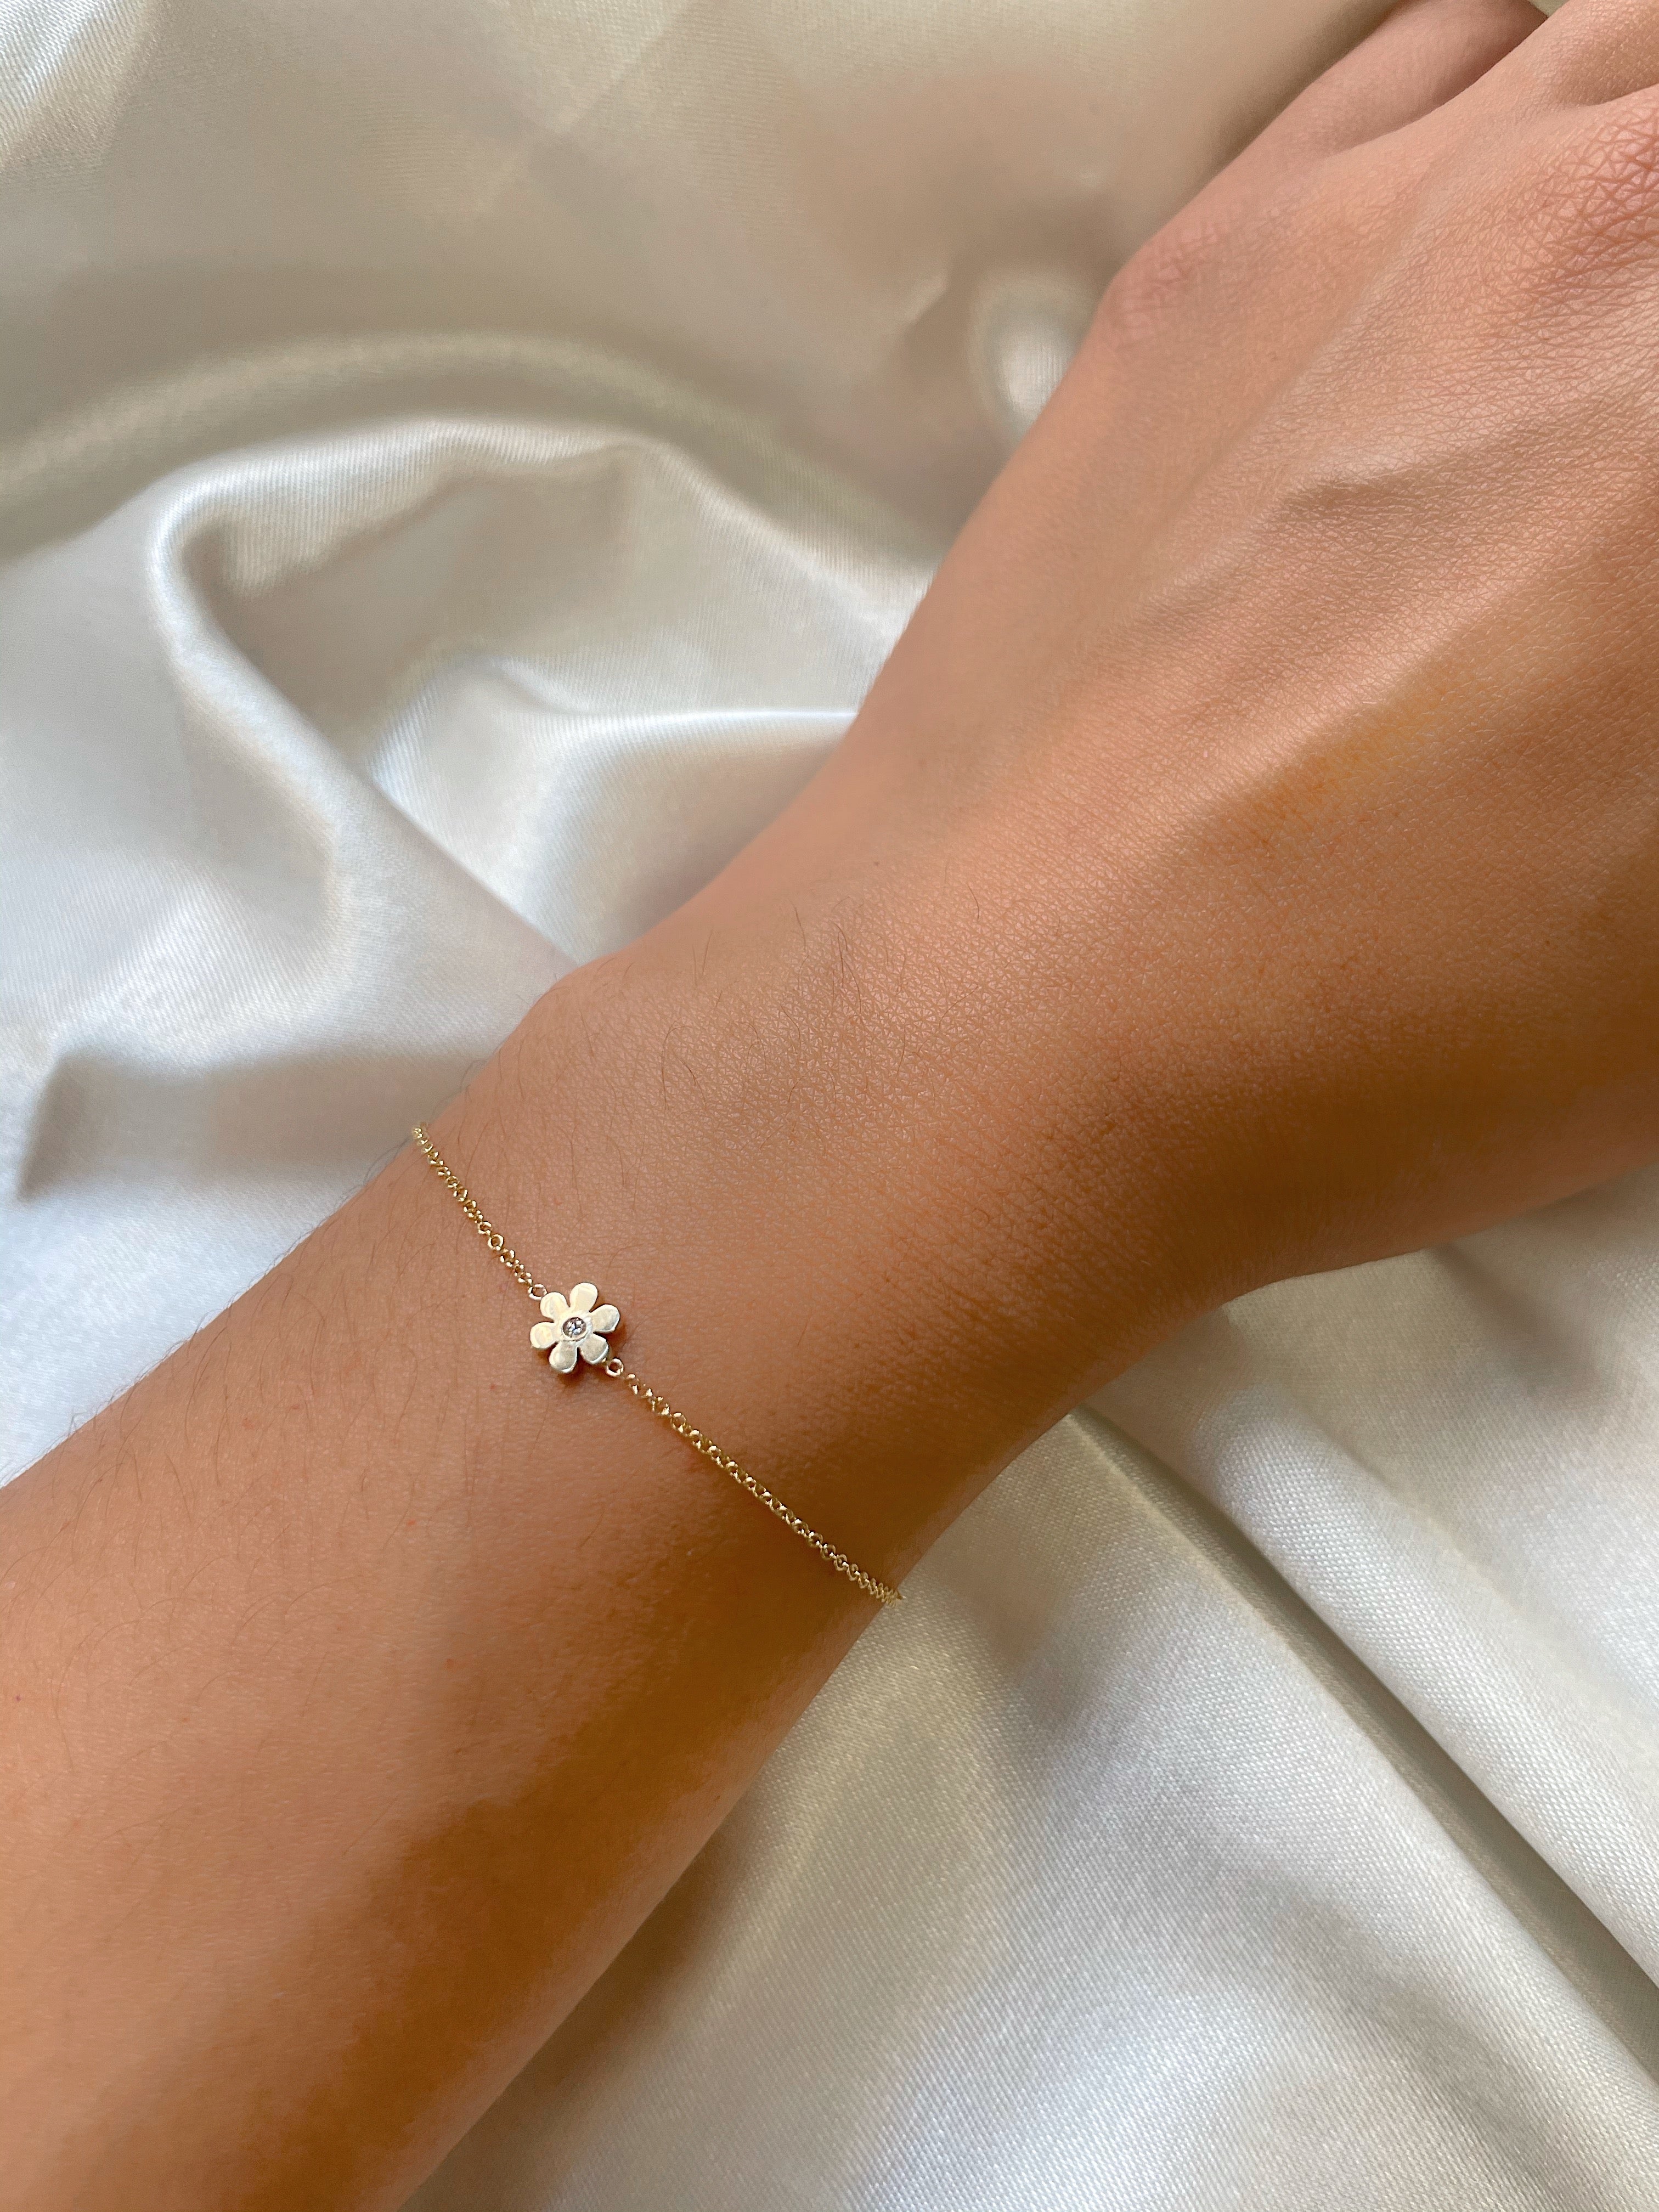 Tiny Flower Bracelet with Diamond